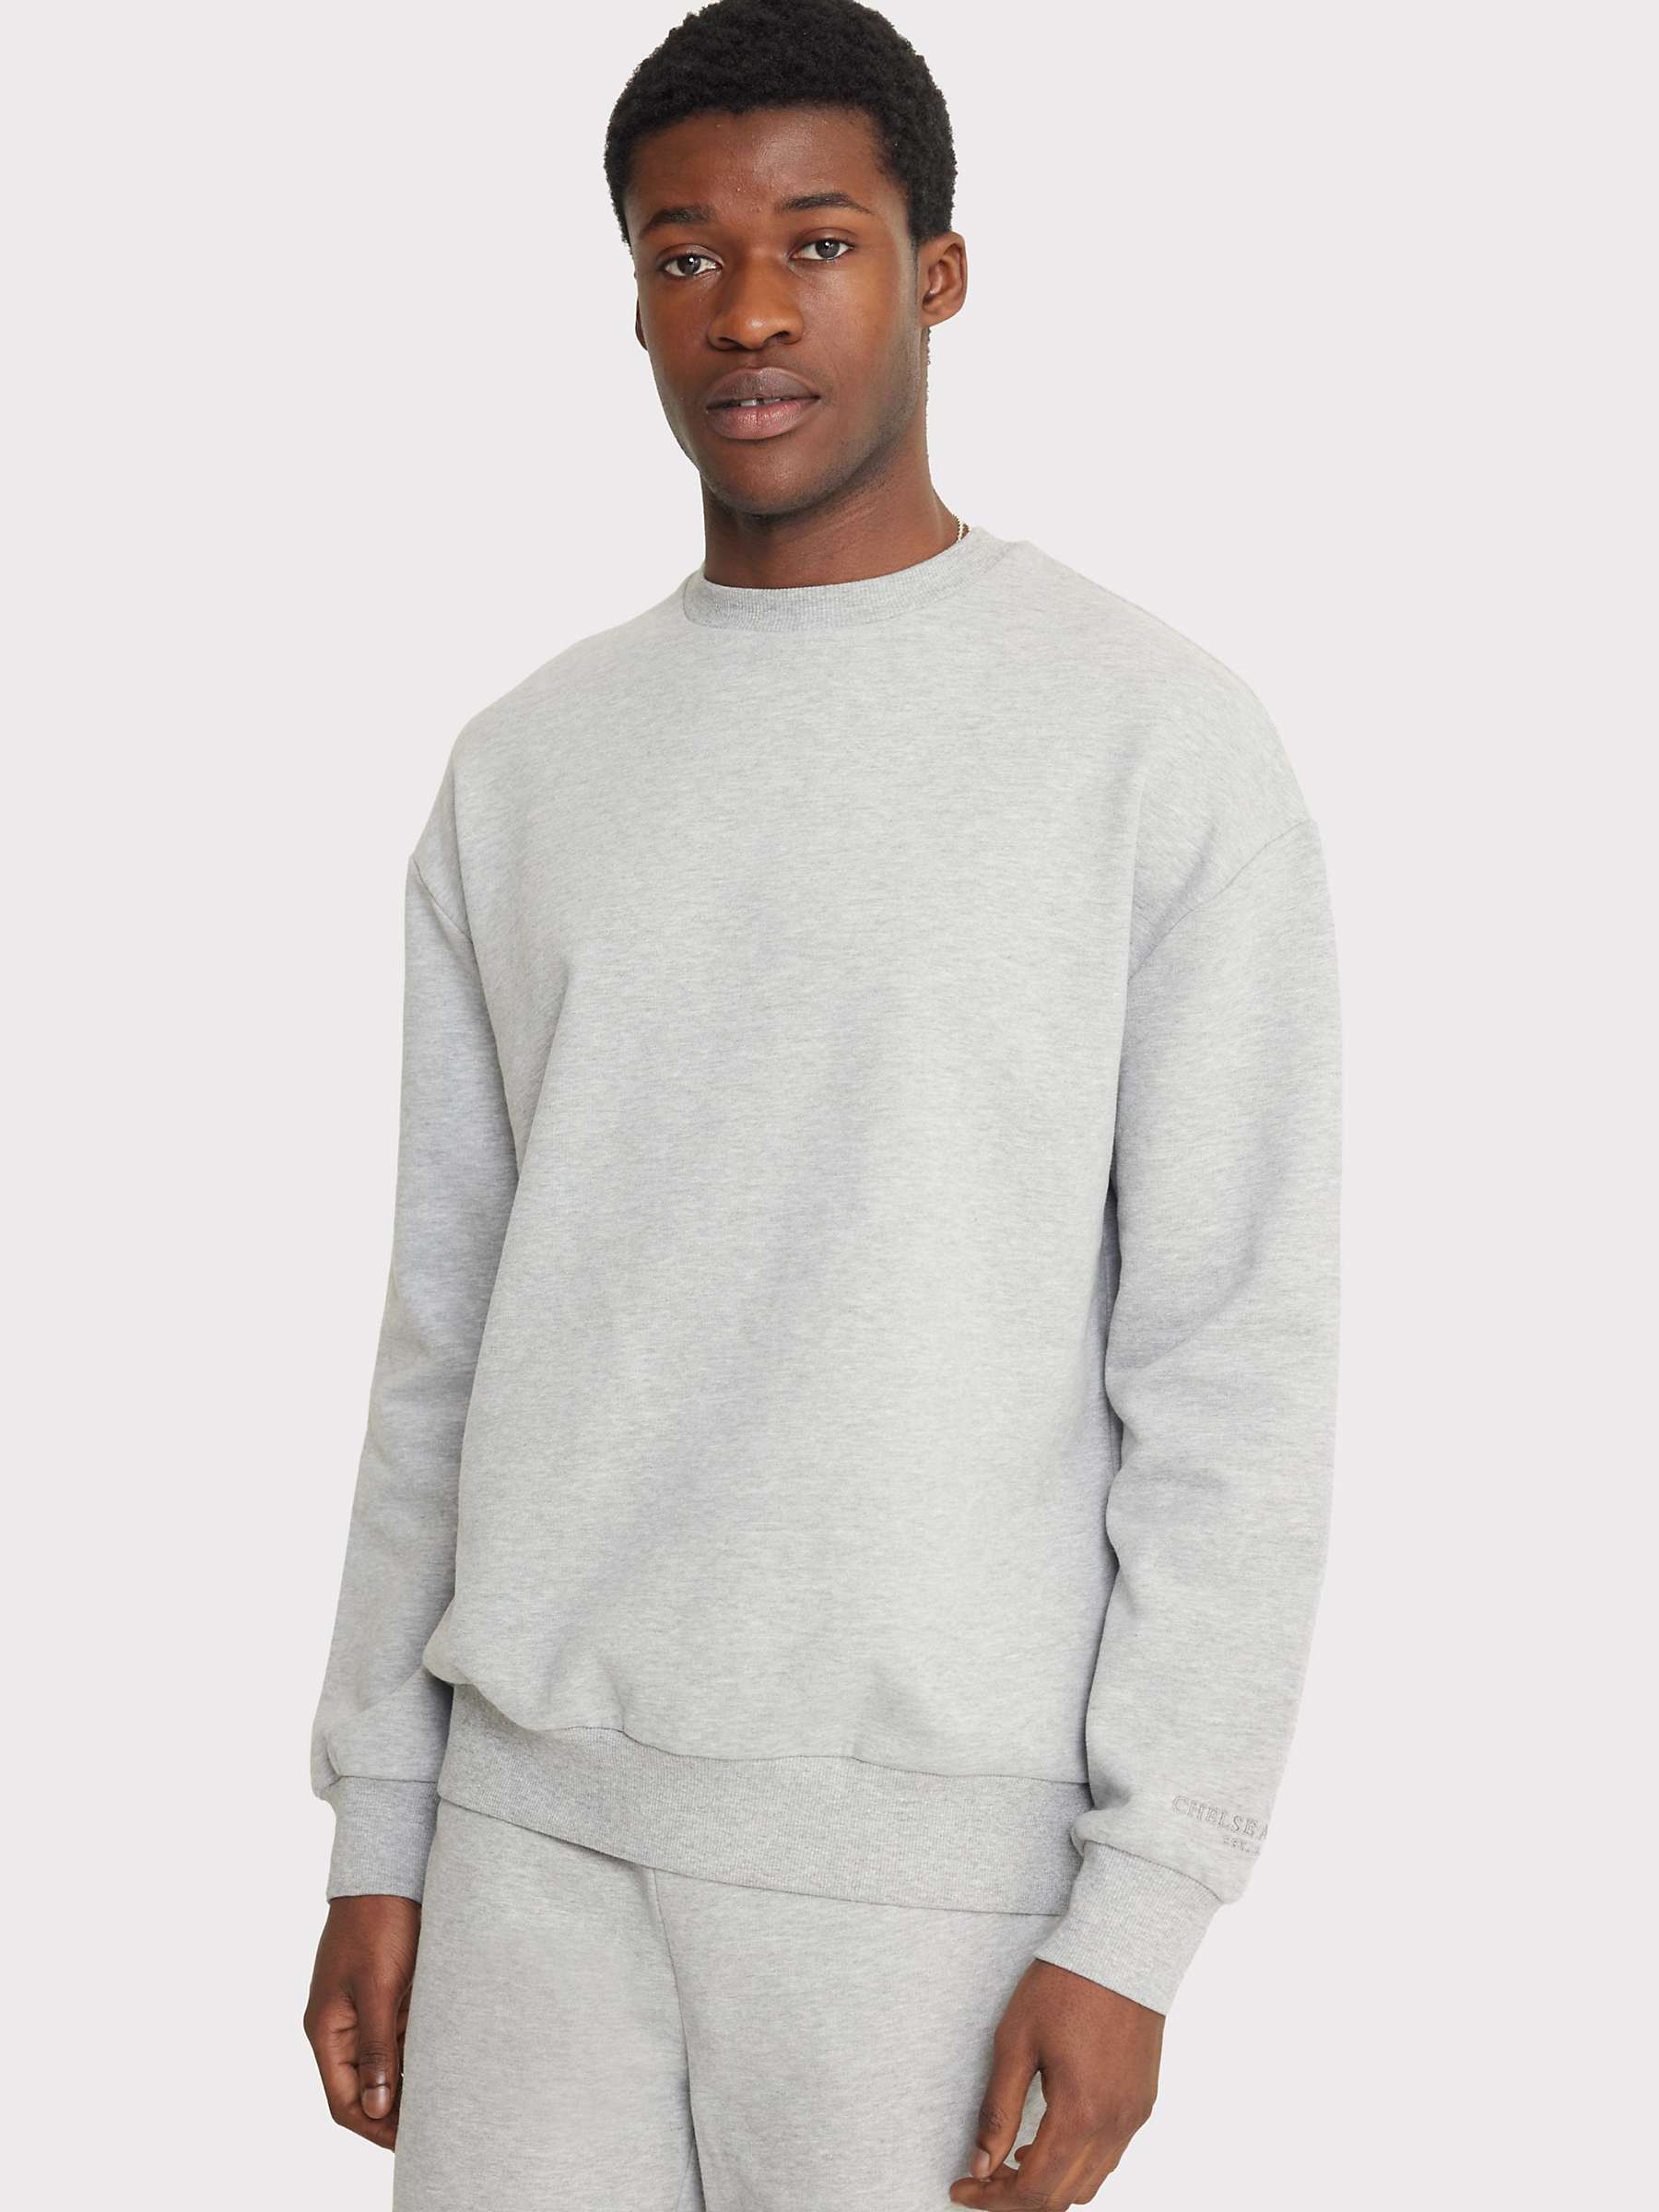 Buy Chelsea Peers Organic Cotton Blend Sweatshirt, Grey Online at johnlewis.com